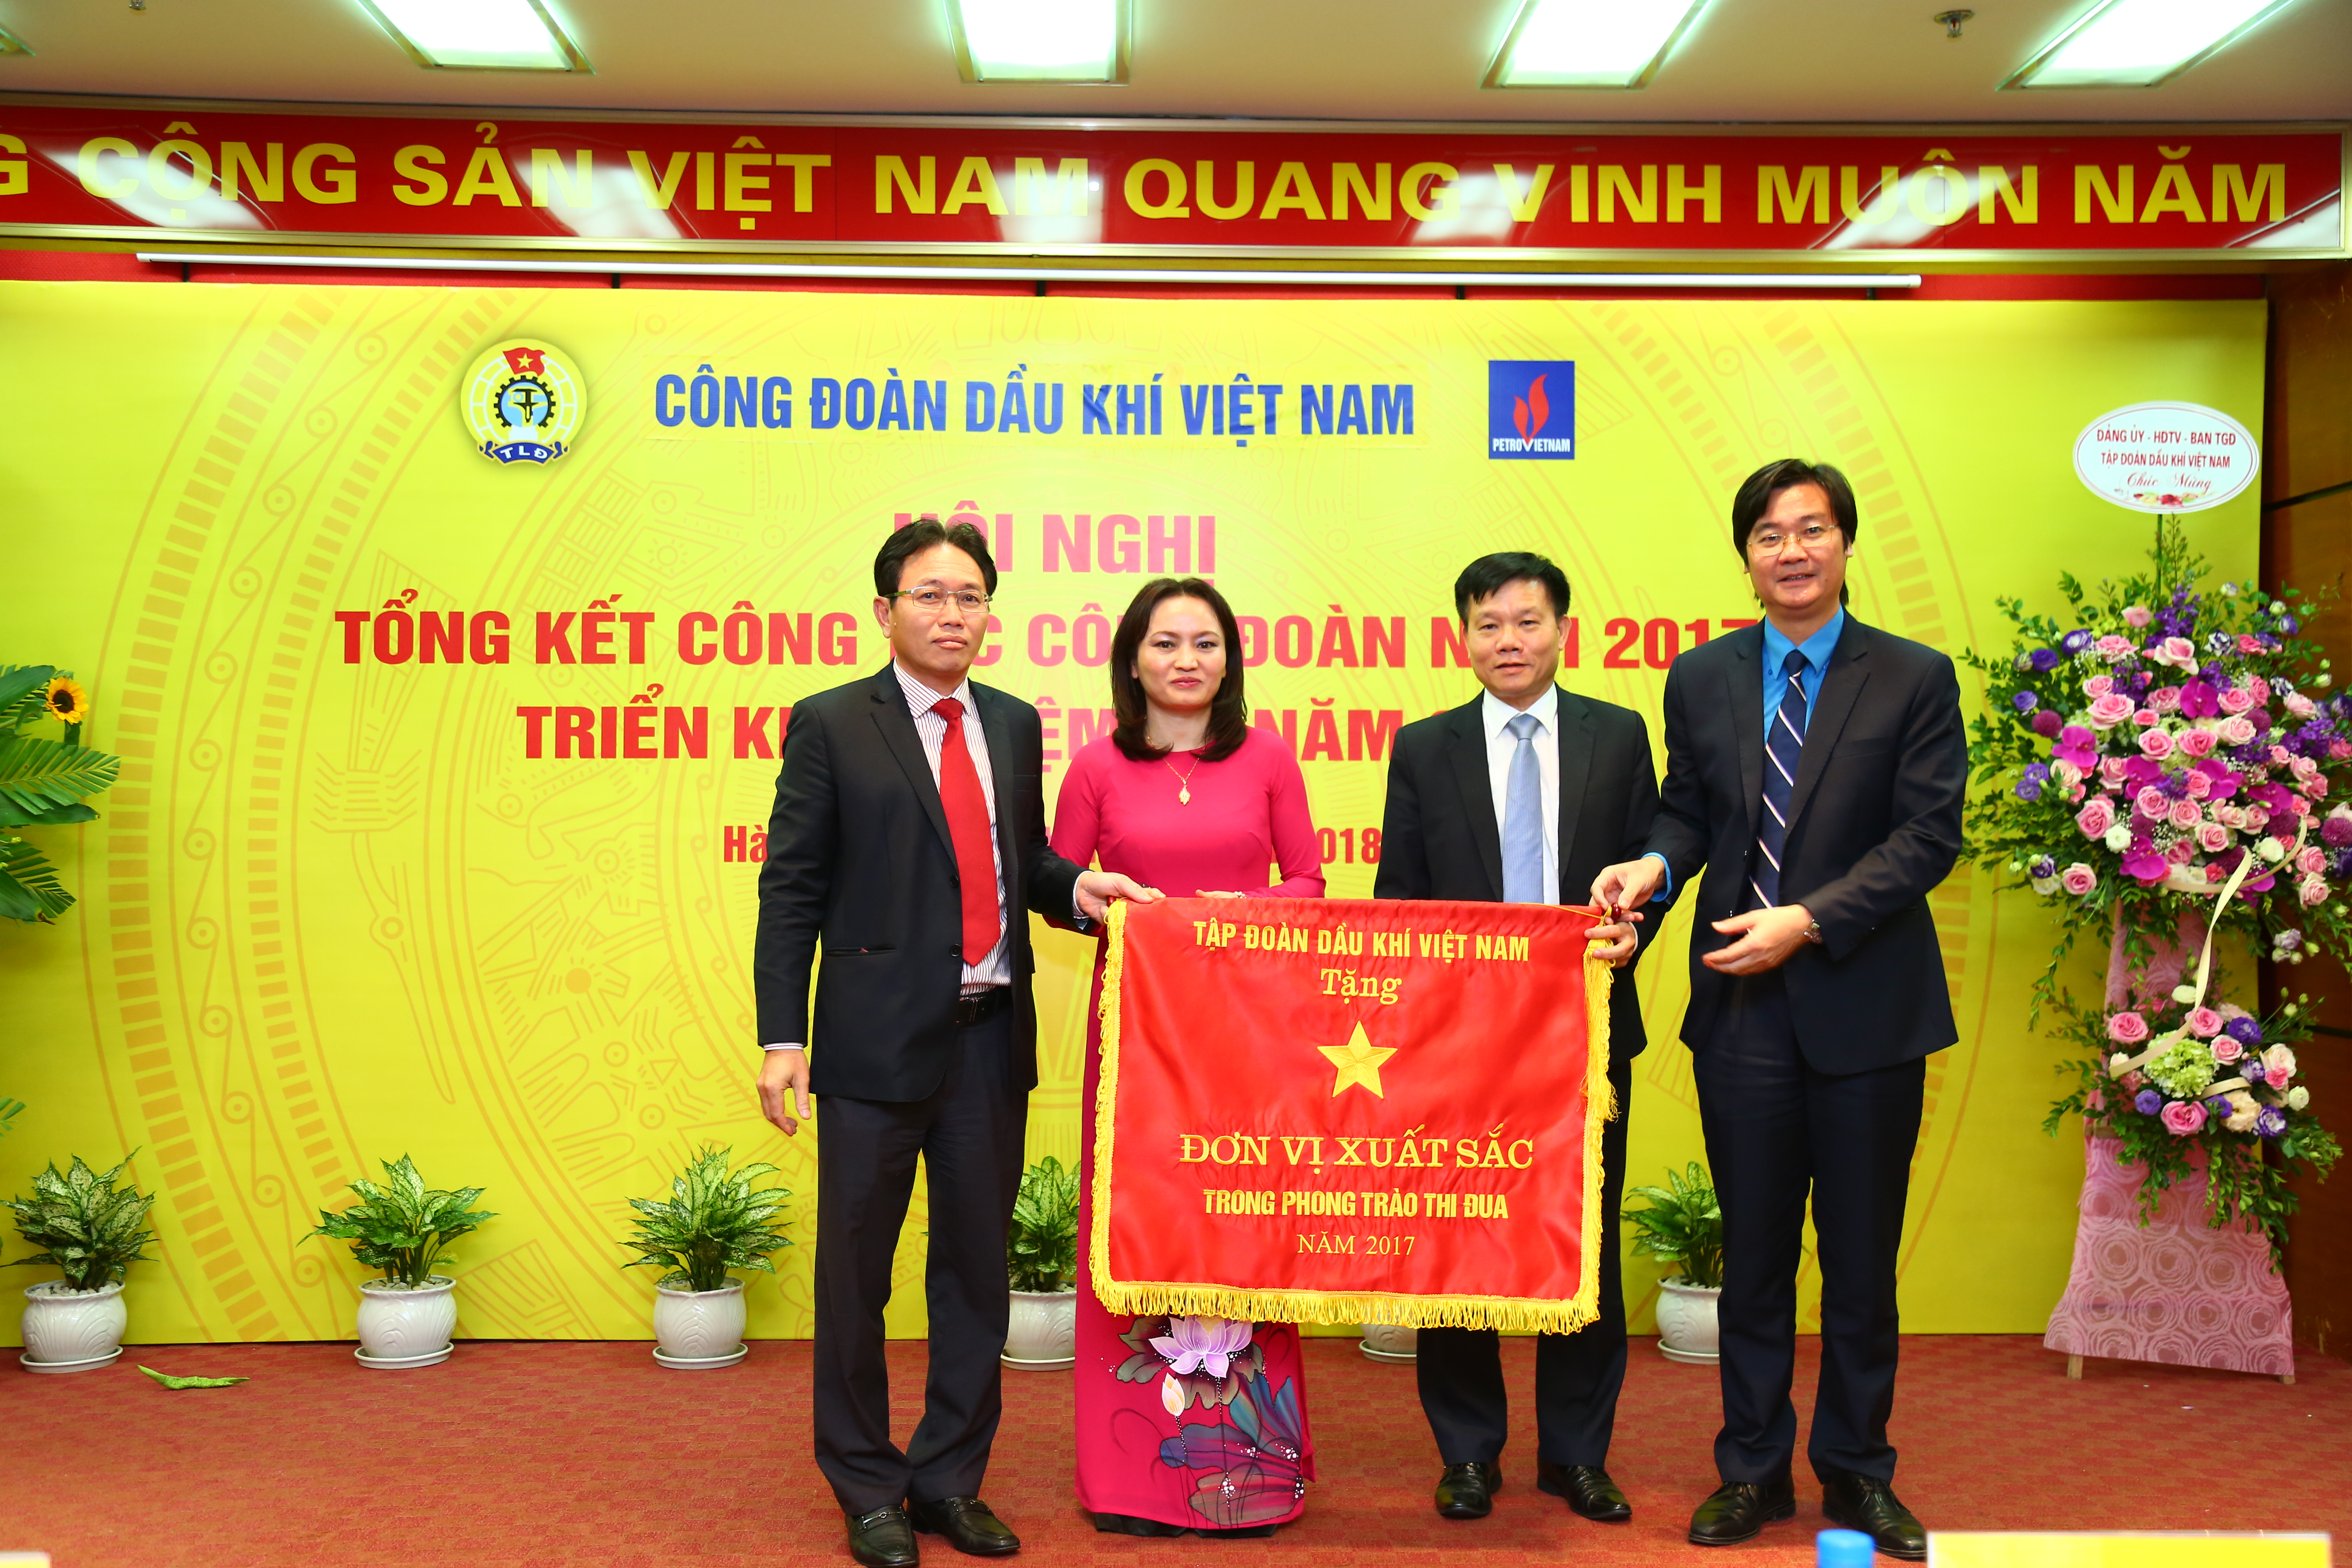 Công đoàn Dầu khí Việt Nam - Điểm sáng trong các phong trào vì người lao động